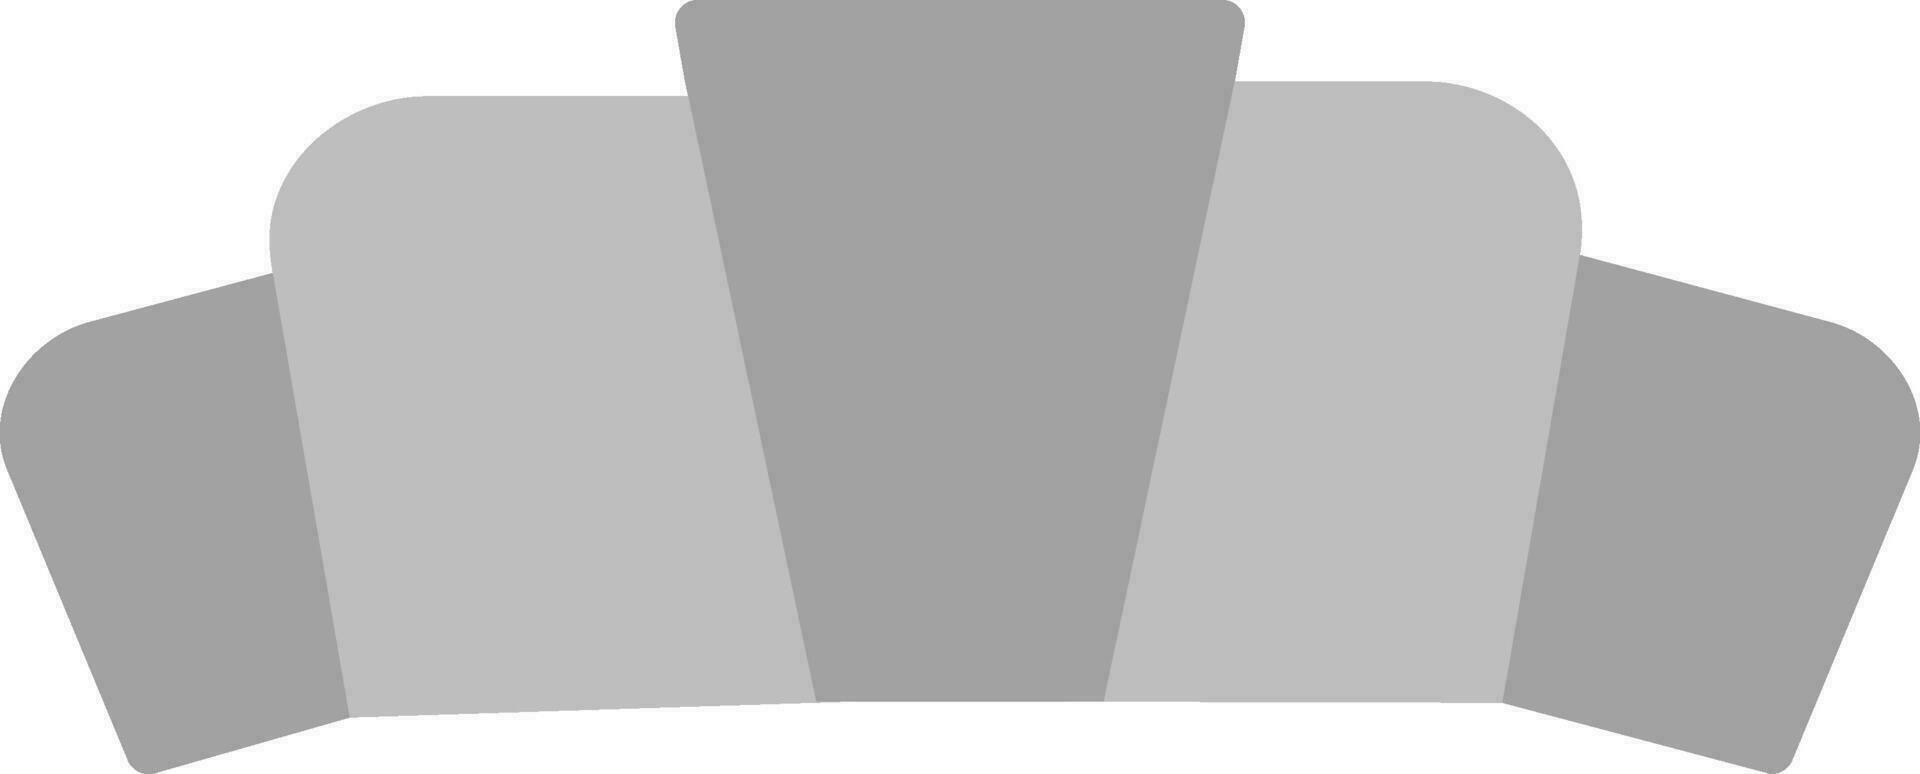 croissant vector pictogram